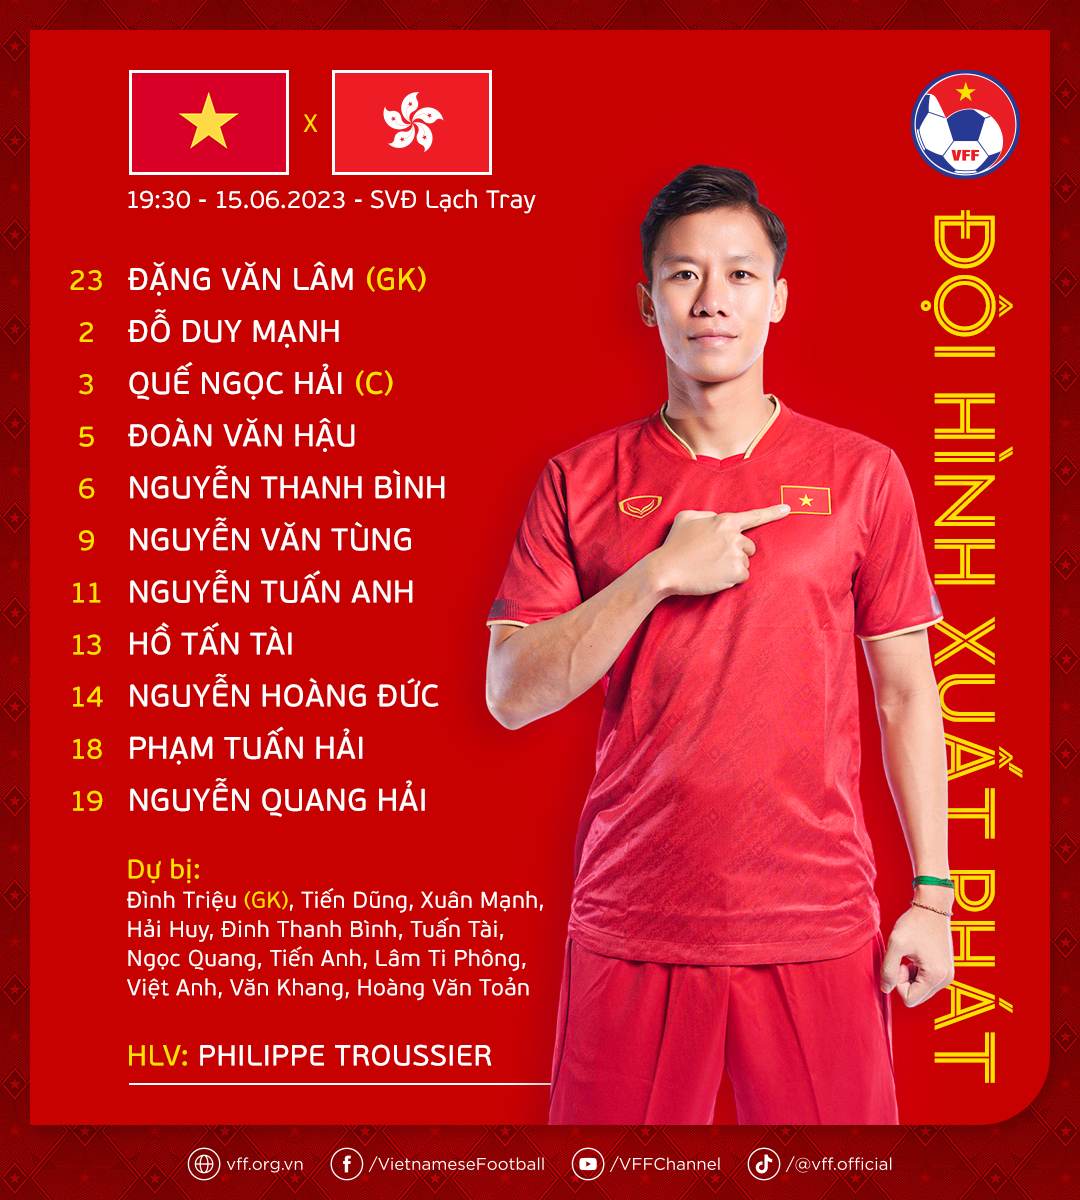 Đội hình đội tuyển Việt Nam: Quang Hải đá chính, Công Phượng và Văn Toàn vắng mặt - Ảnh 1.